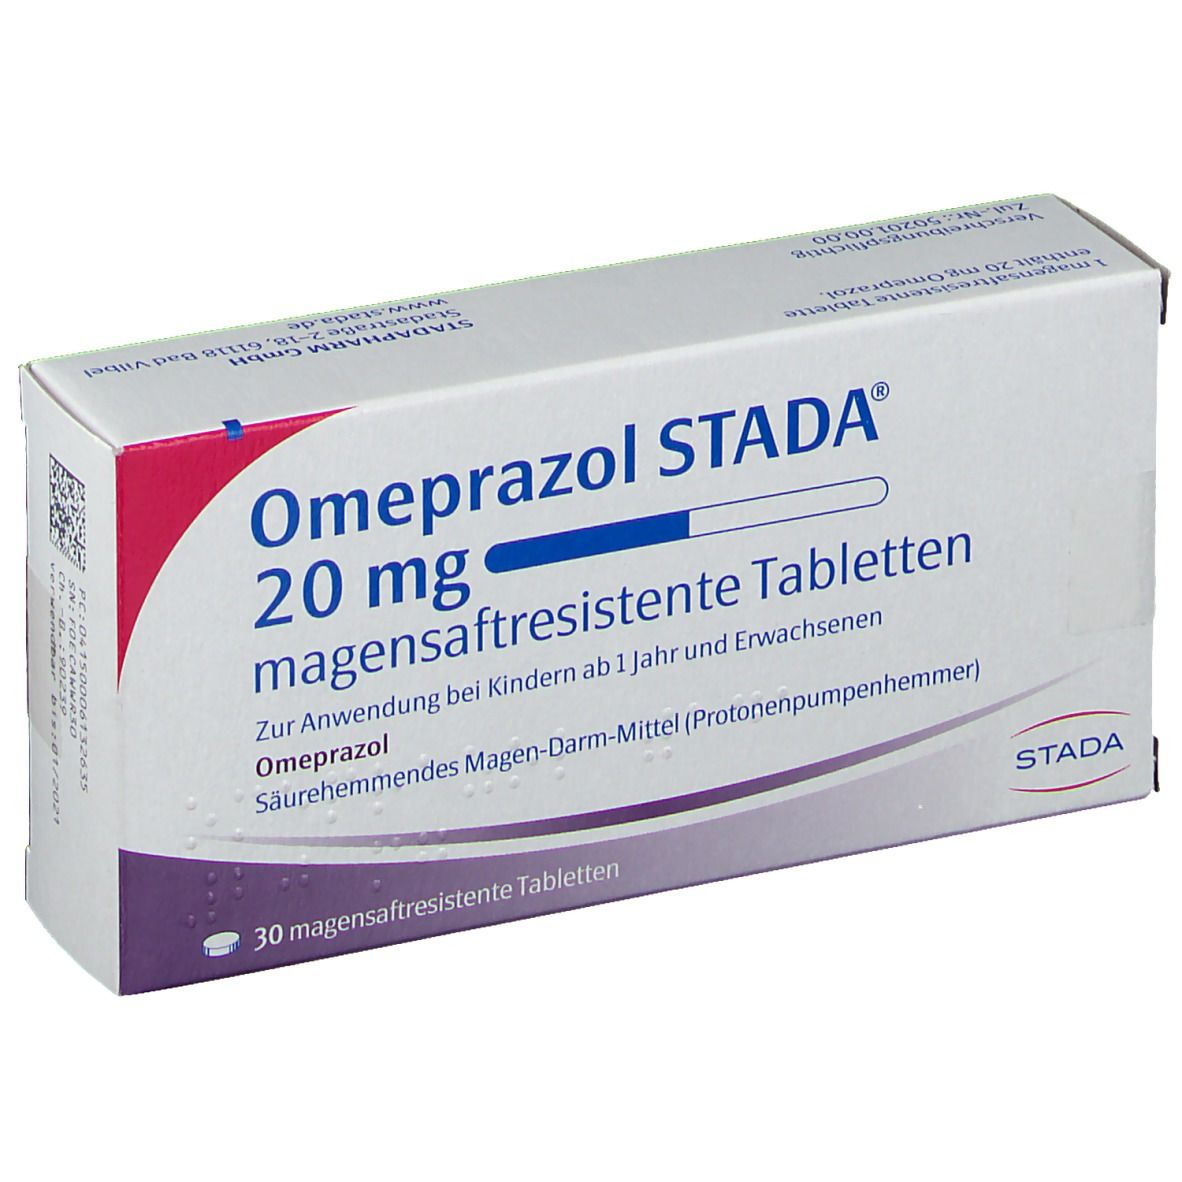 Omeprazol STADA® 20 mg